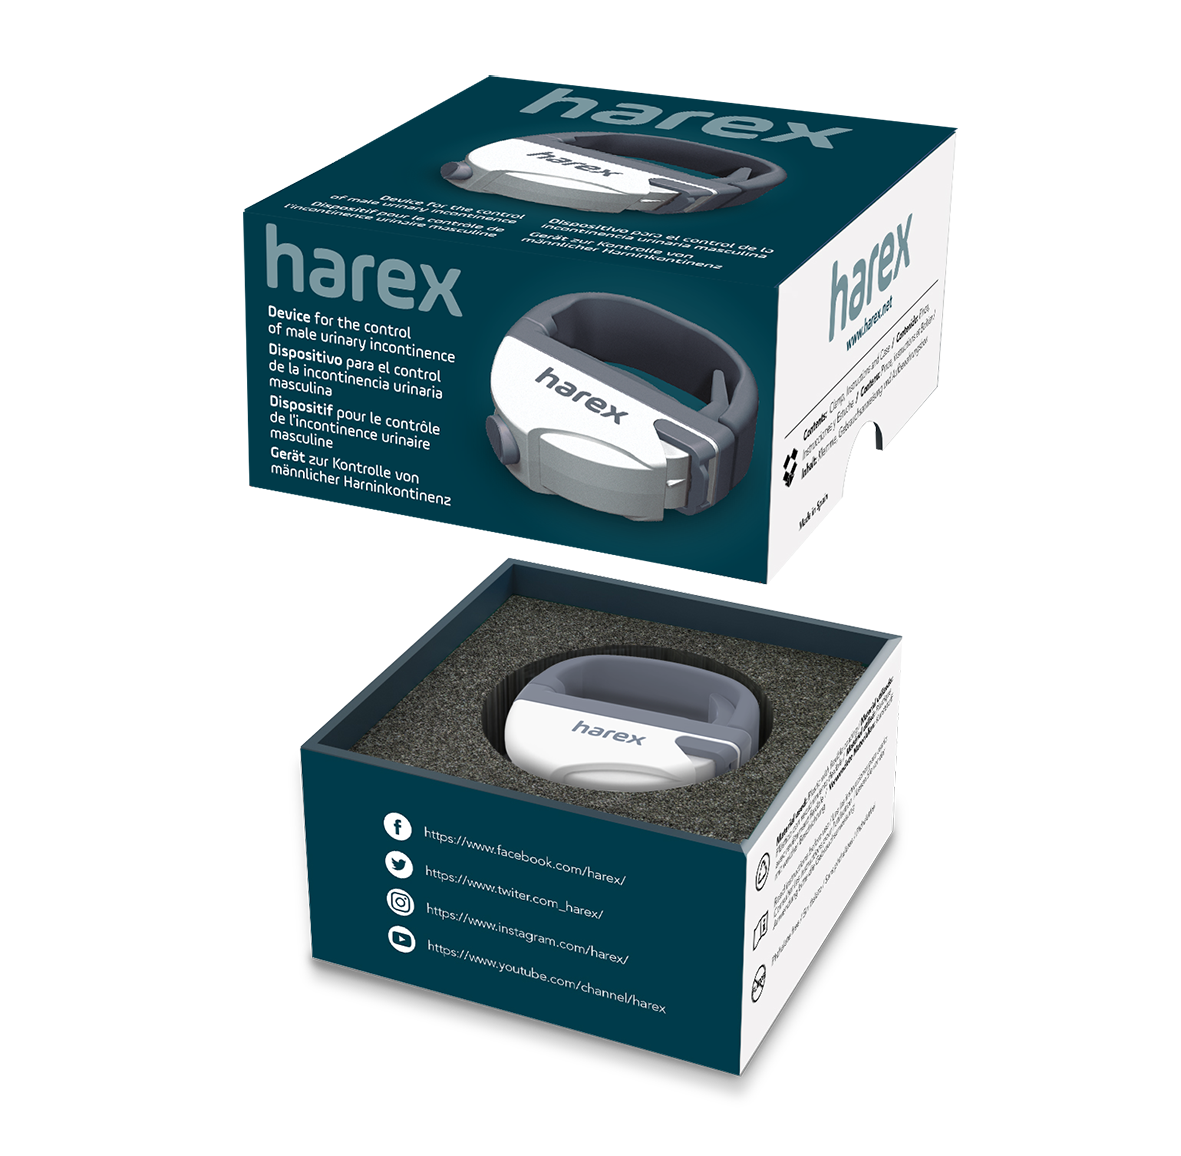 HAREX - Medicinski pripomoček za nadzor urinske inkontinence pri moških - Najzdravnik